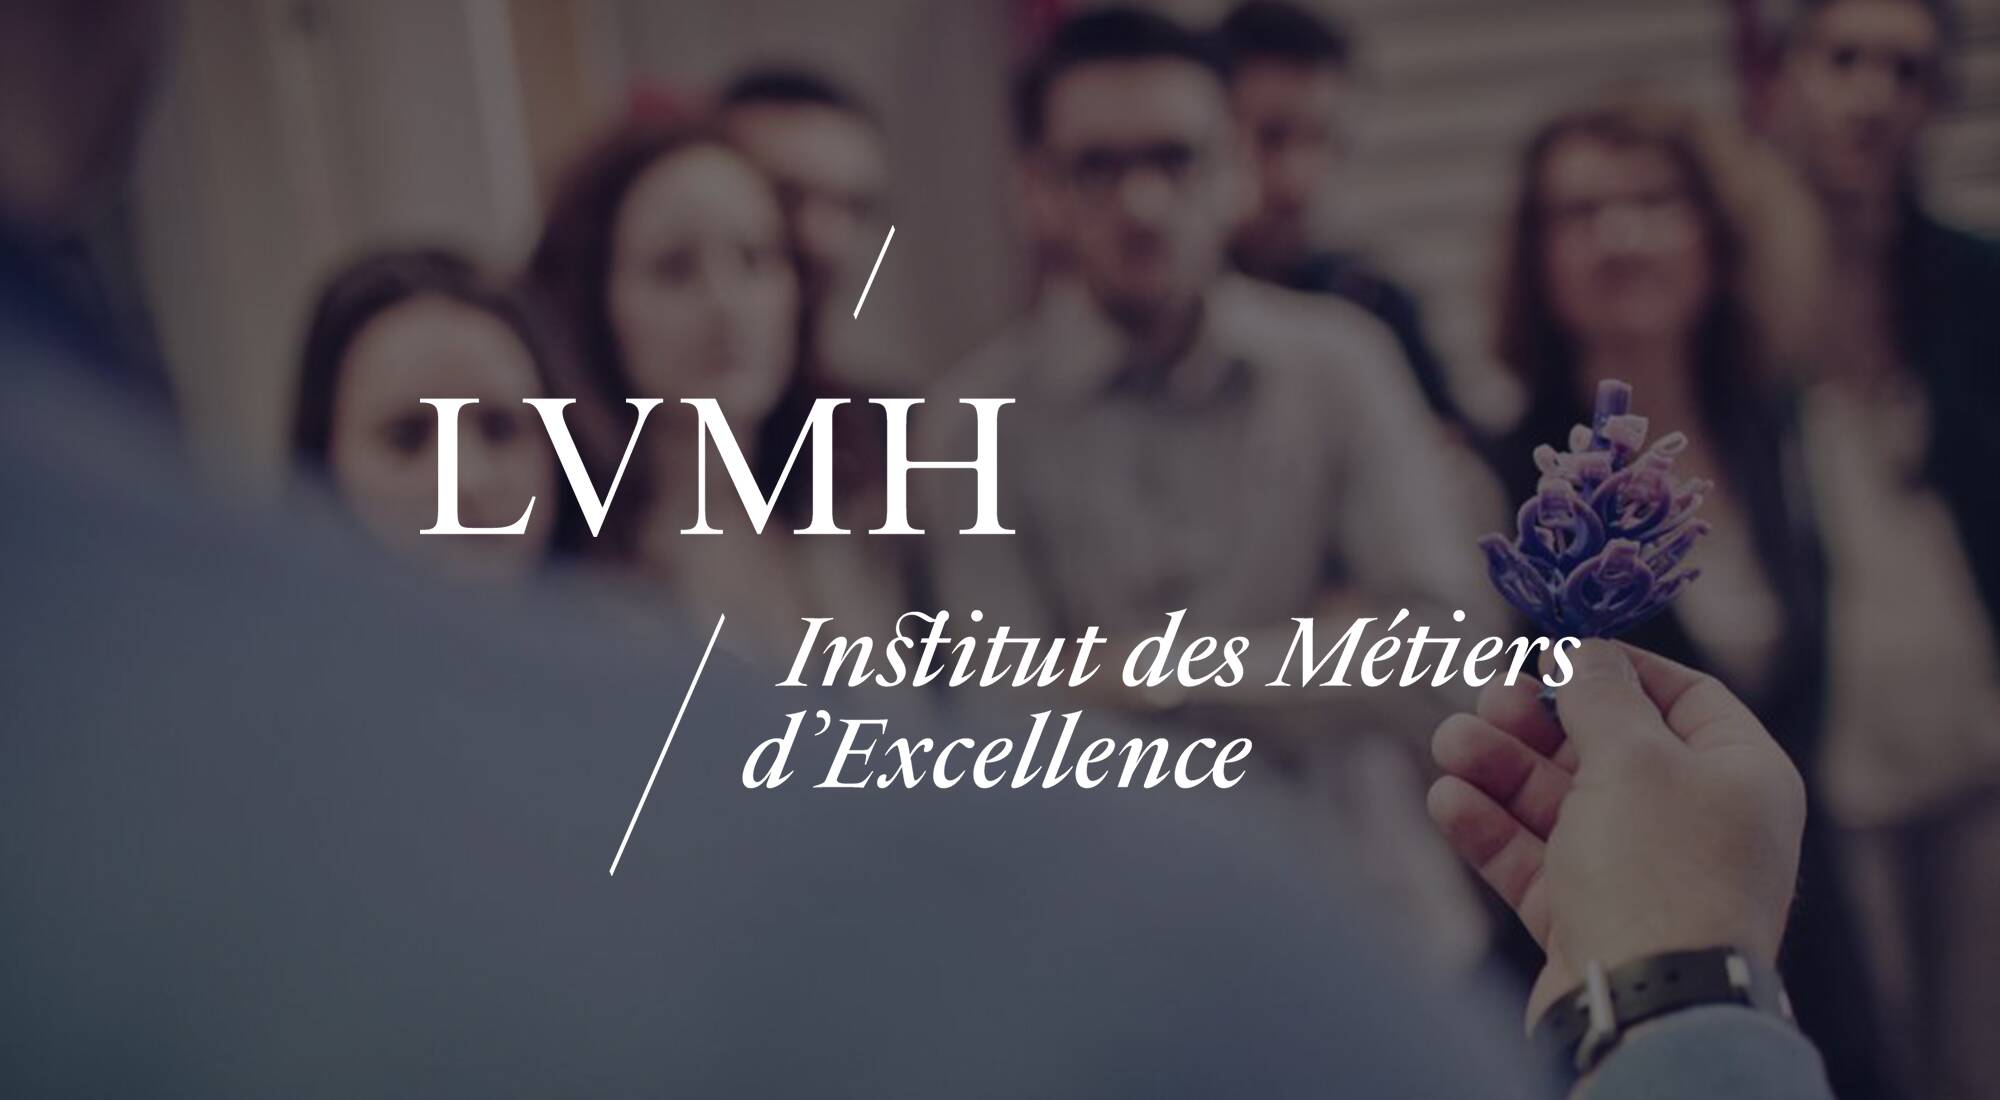 LVMH Institut des Métiers d'Excellence Unveils New Programs in